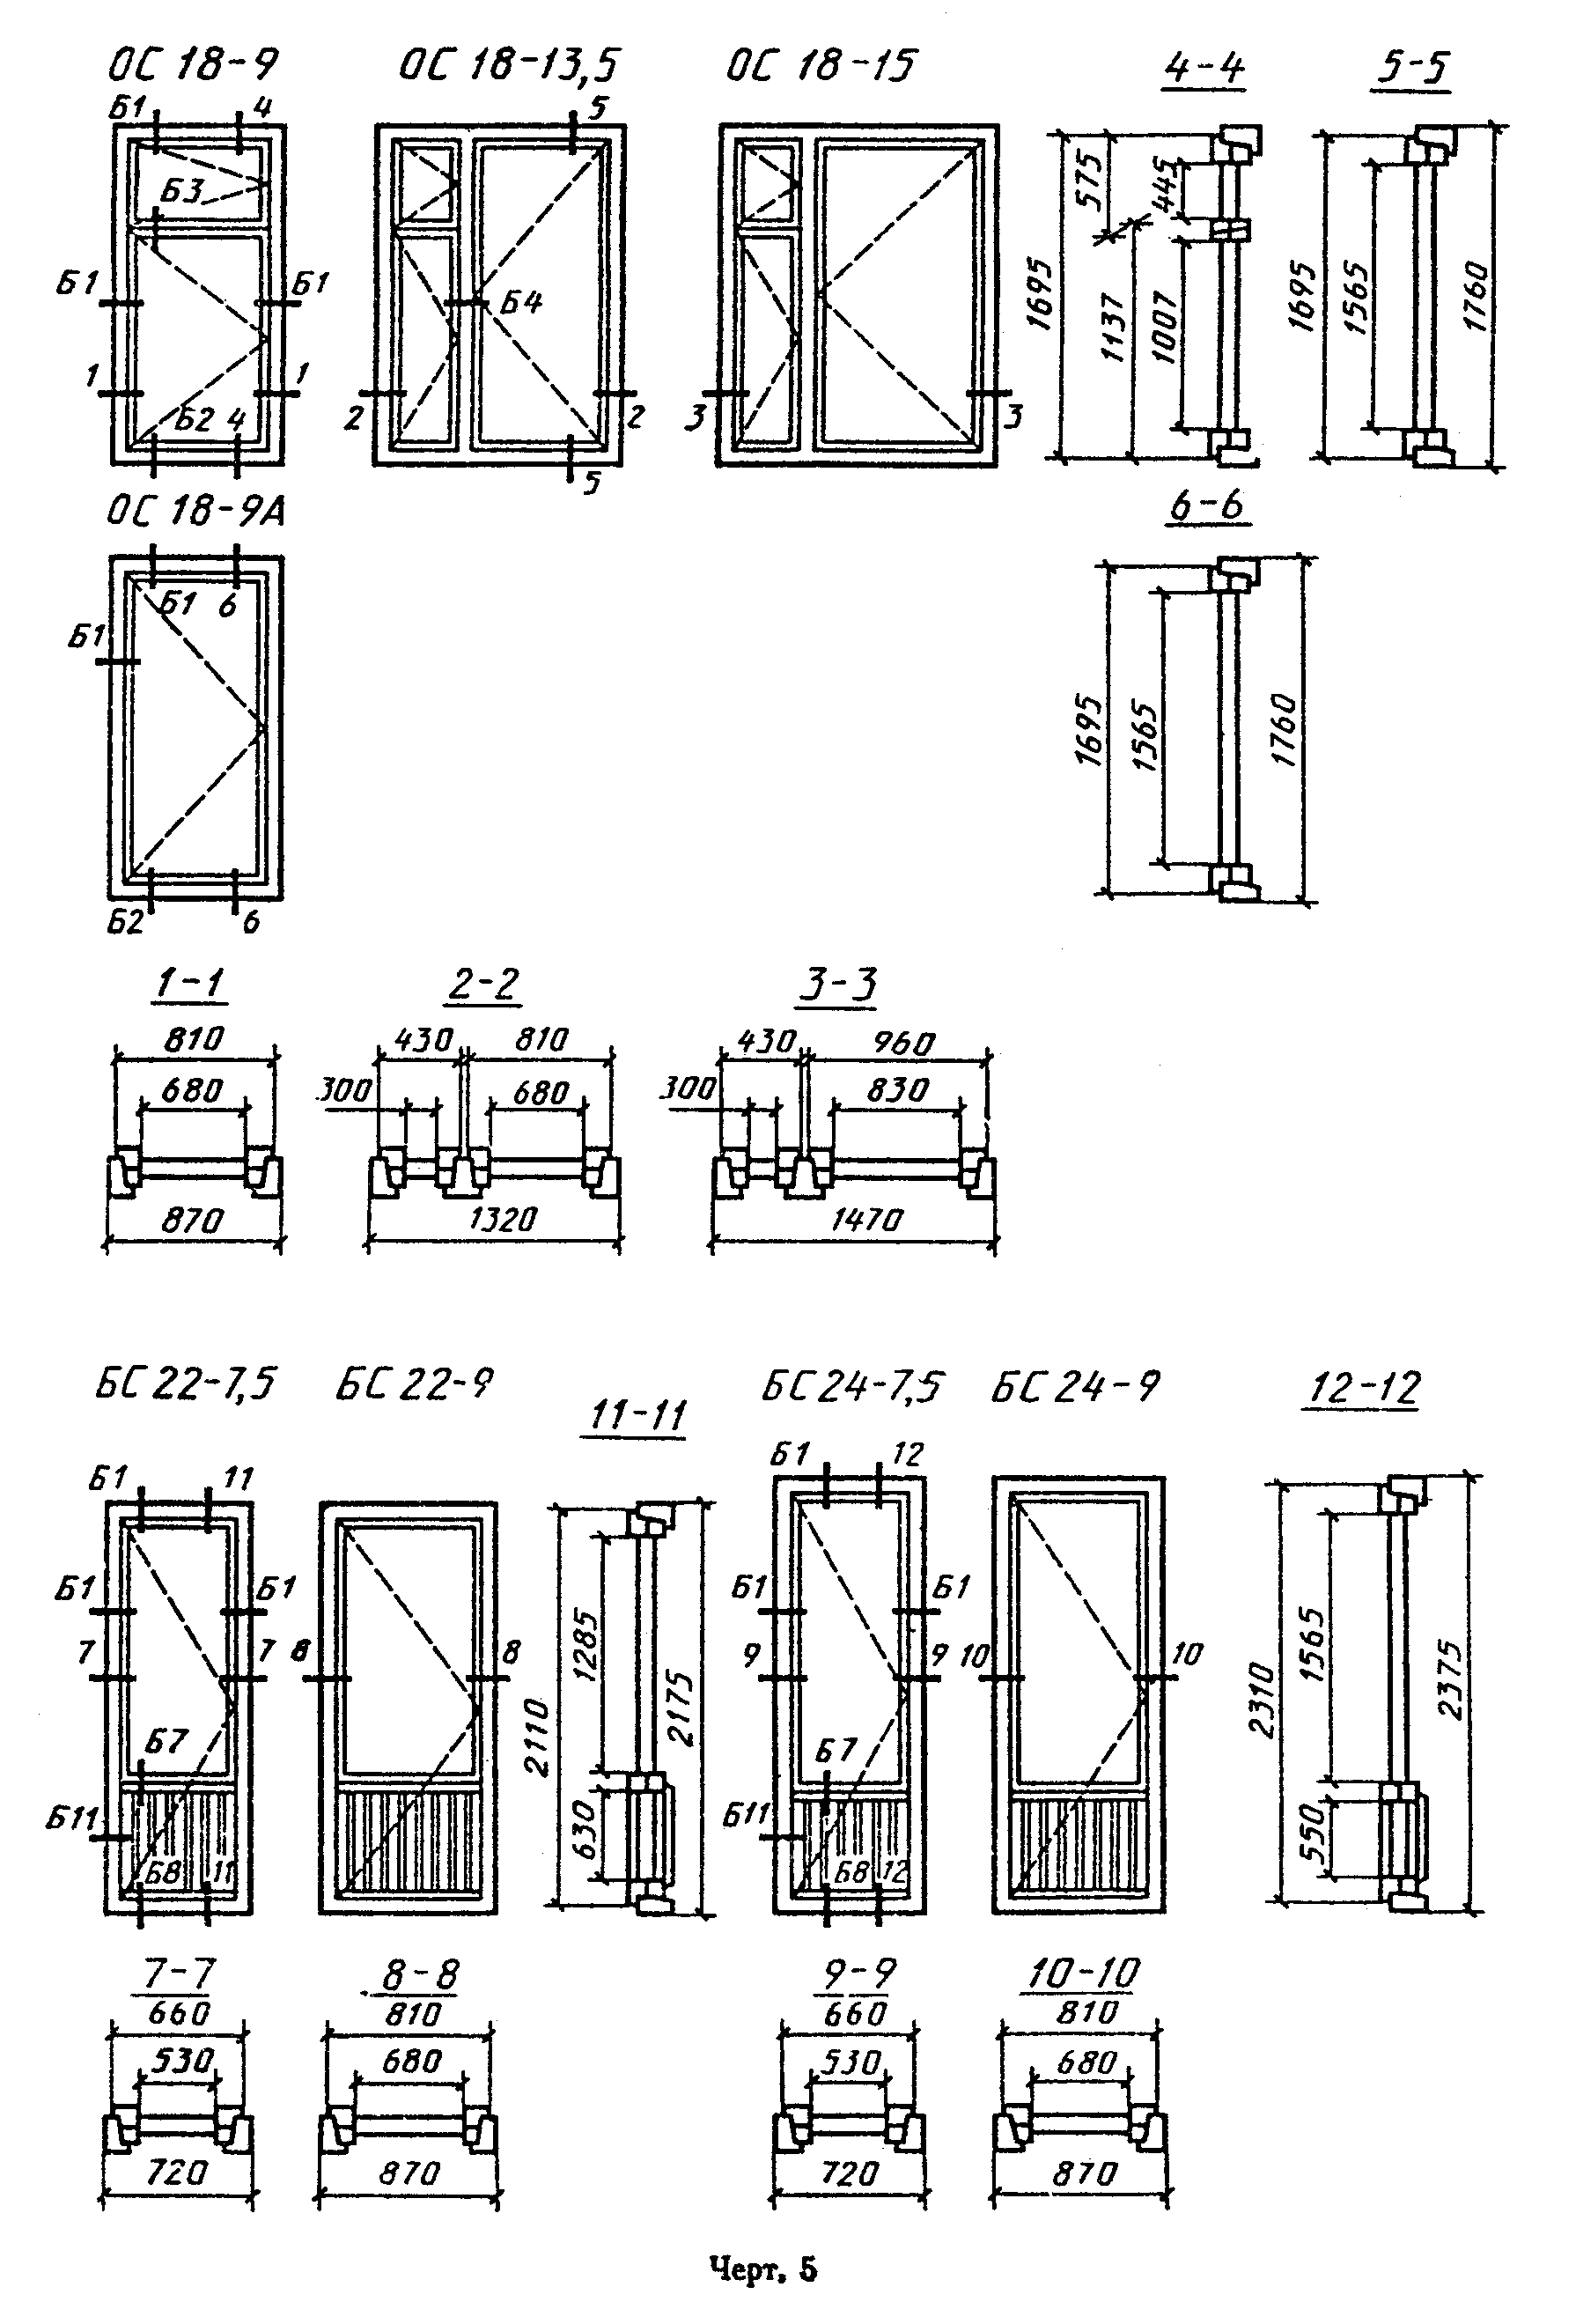 Стандартные балконные двери